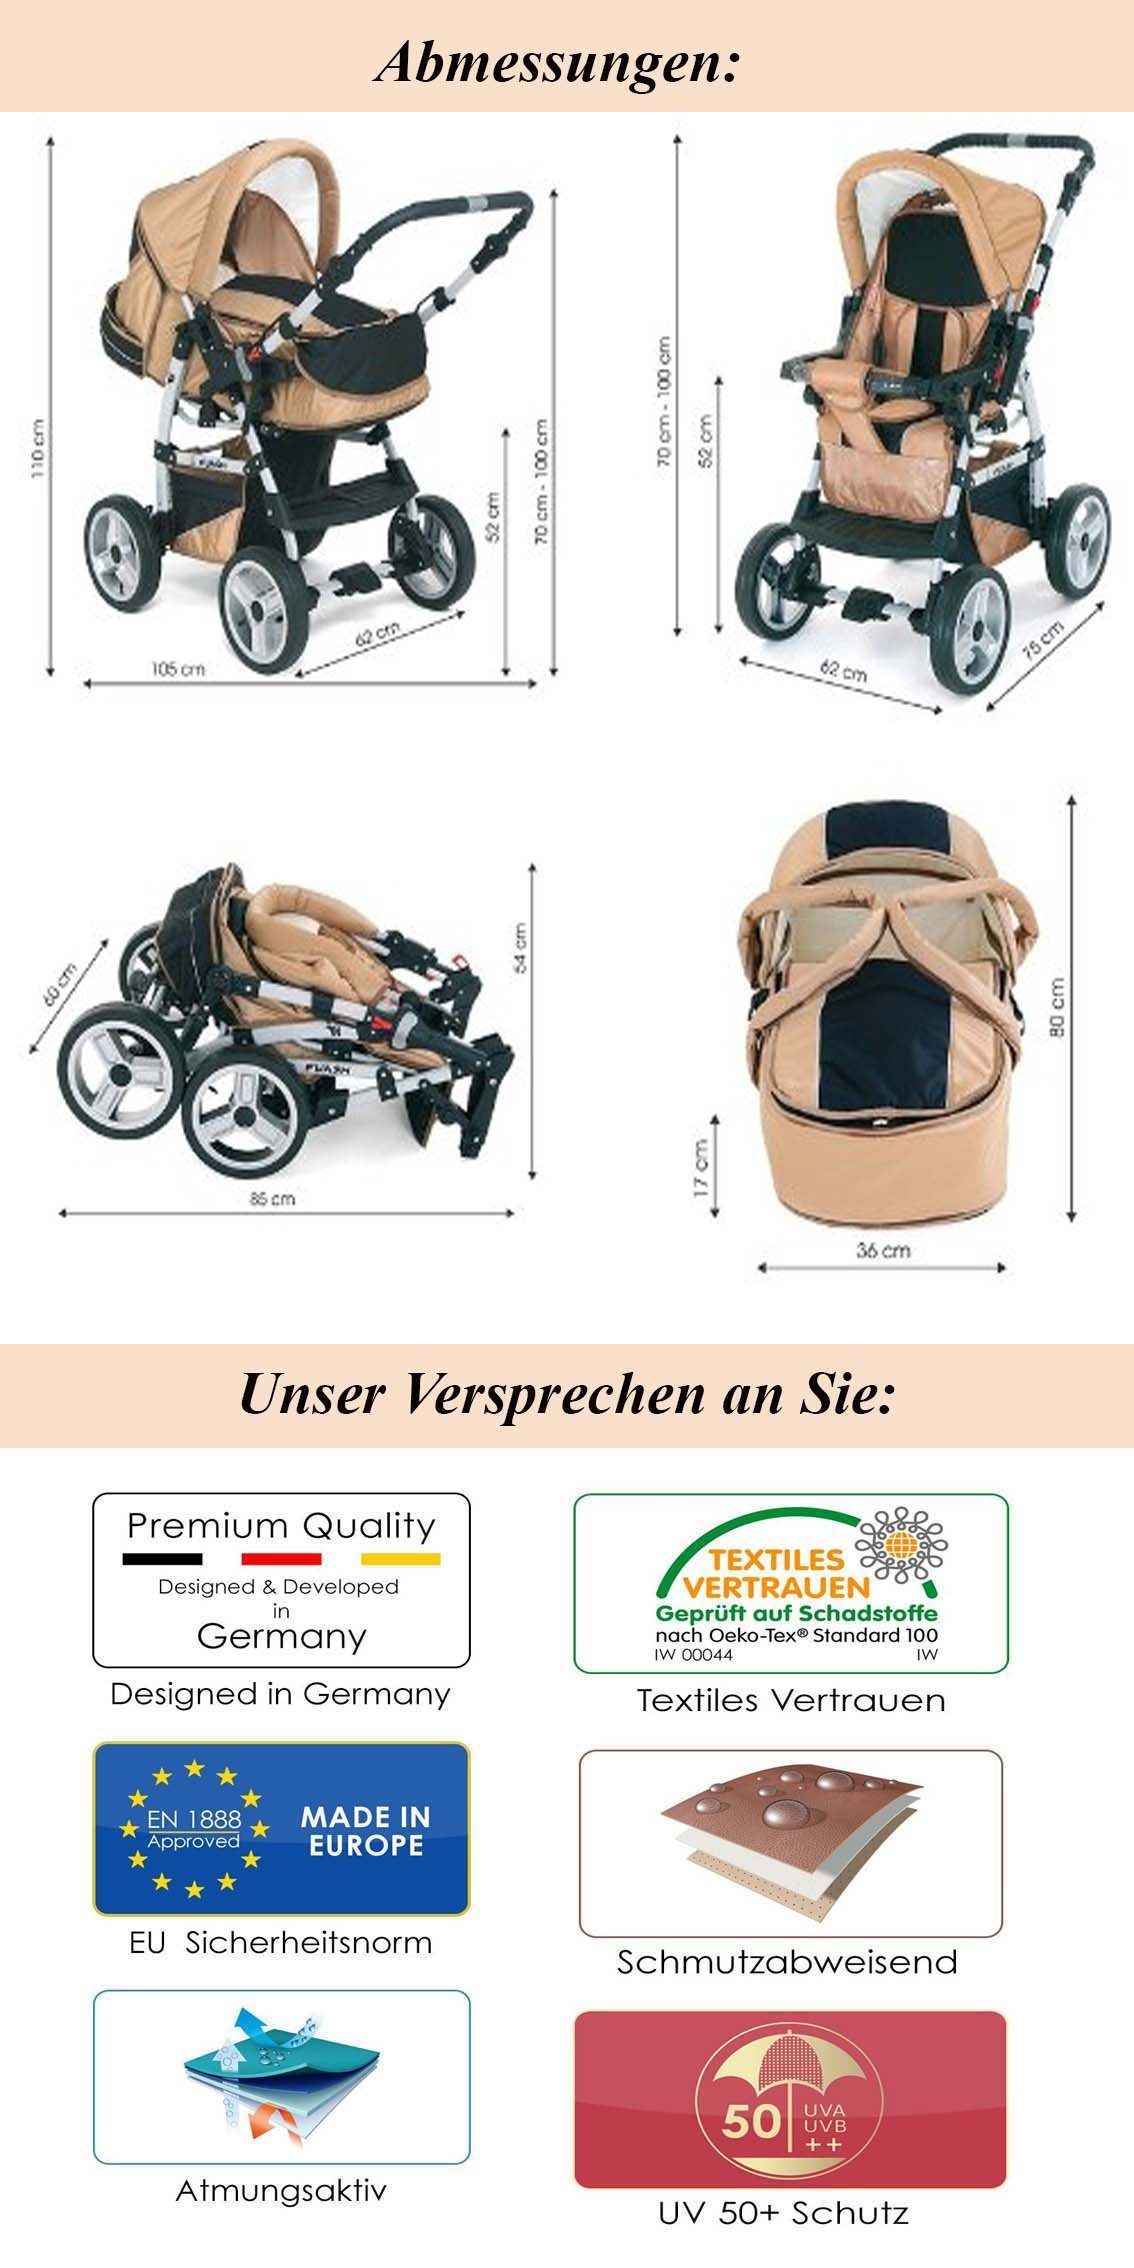 inkl. Flash Kombi-Kinderwagen - Teile 1 babies-on-wheels in in Anthrazit-Grün Farben 3 15 Autositz Kinderwagen-Set 18 -